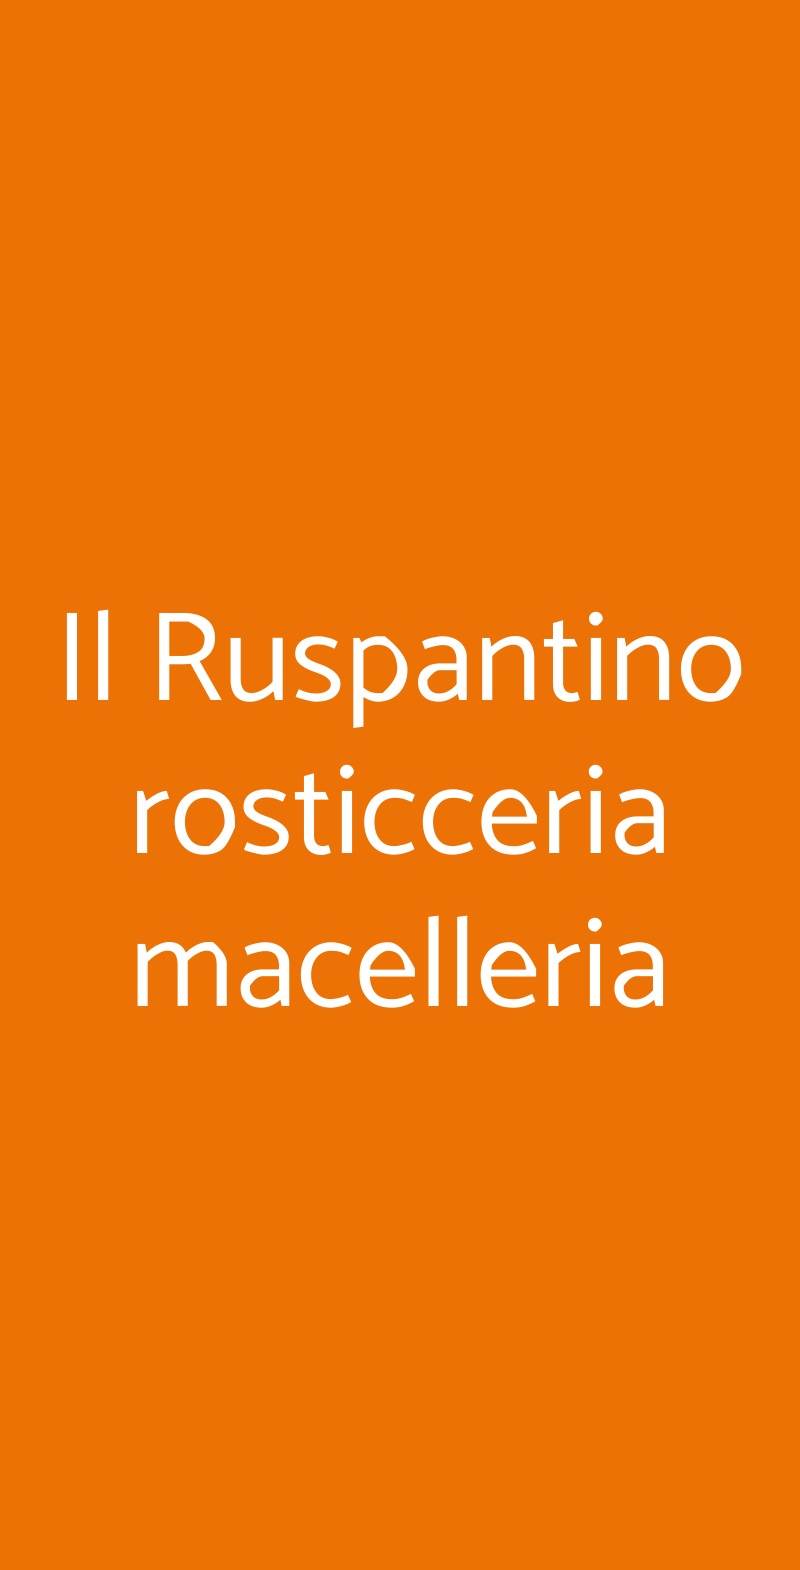 Il Ruspantino rosticceria macelleria Santeramo in Colle menù 1 pagina